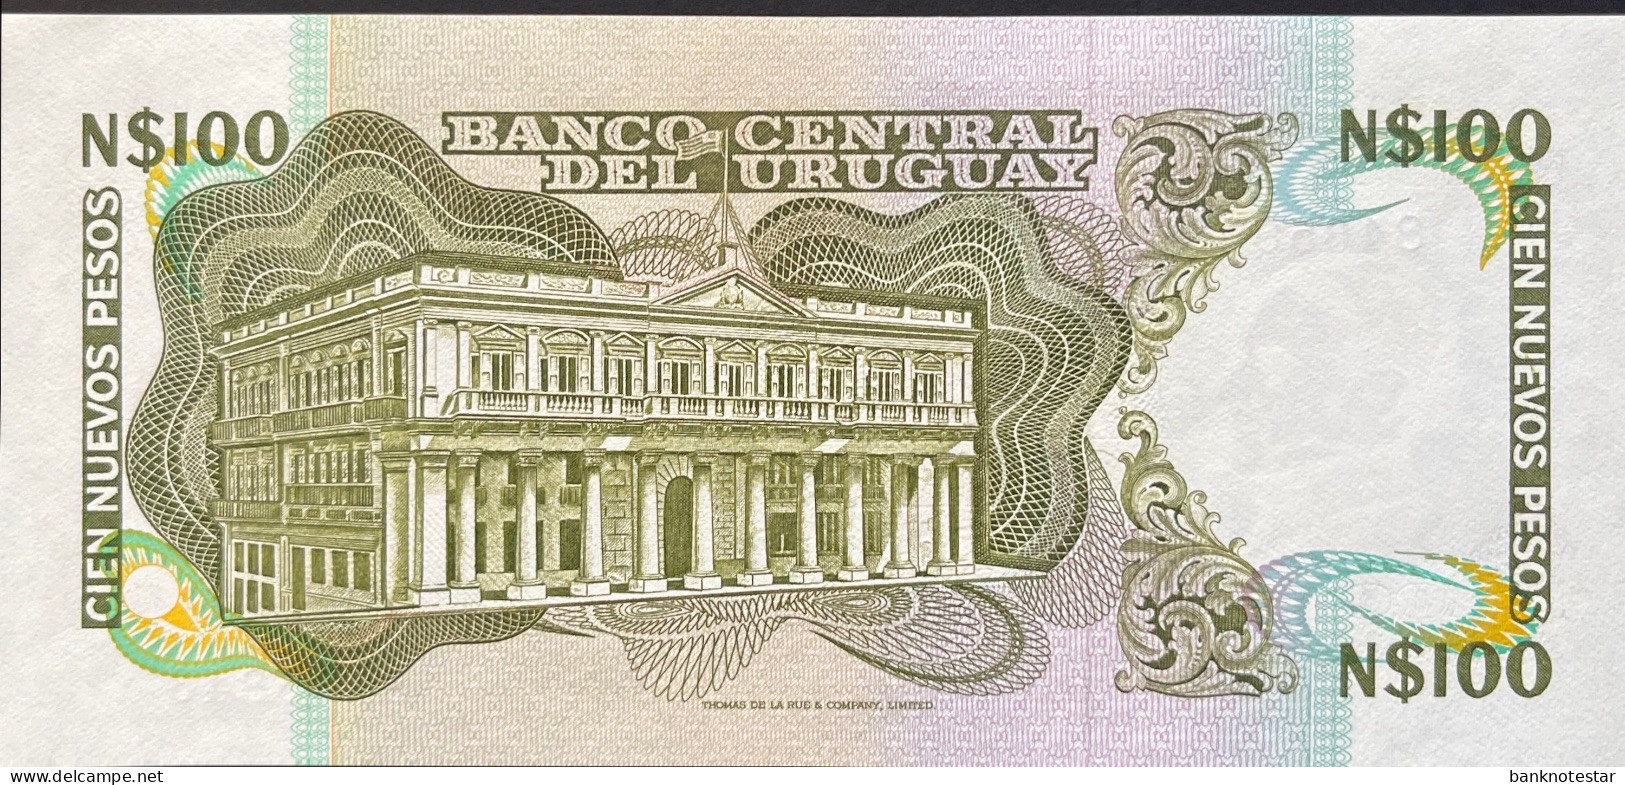 Uruguay 100 Nuevos Pesos, P-62c (1985) - UNC - RARE Series E Banknote - Uruguay